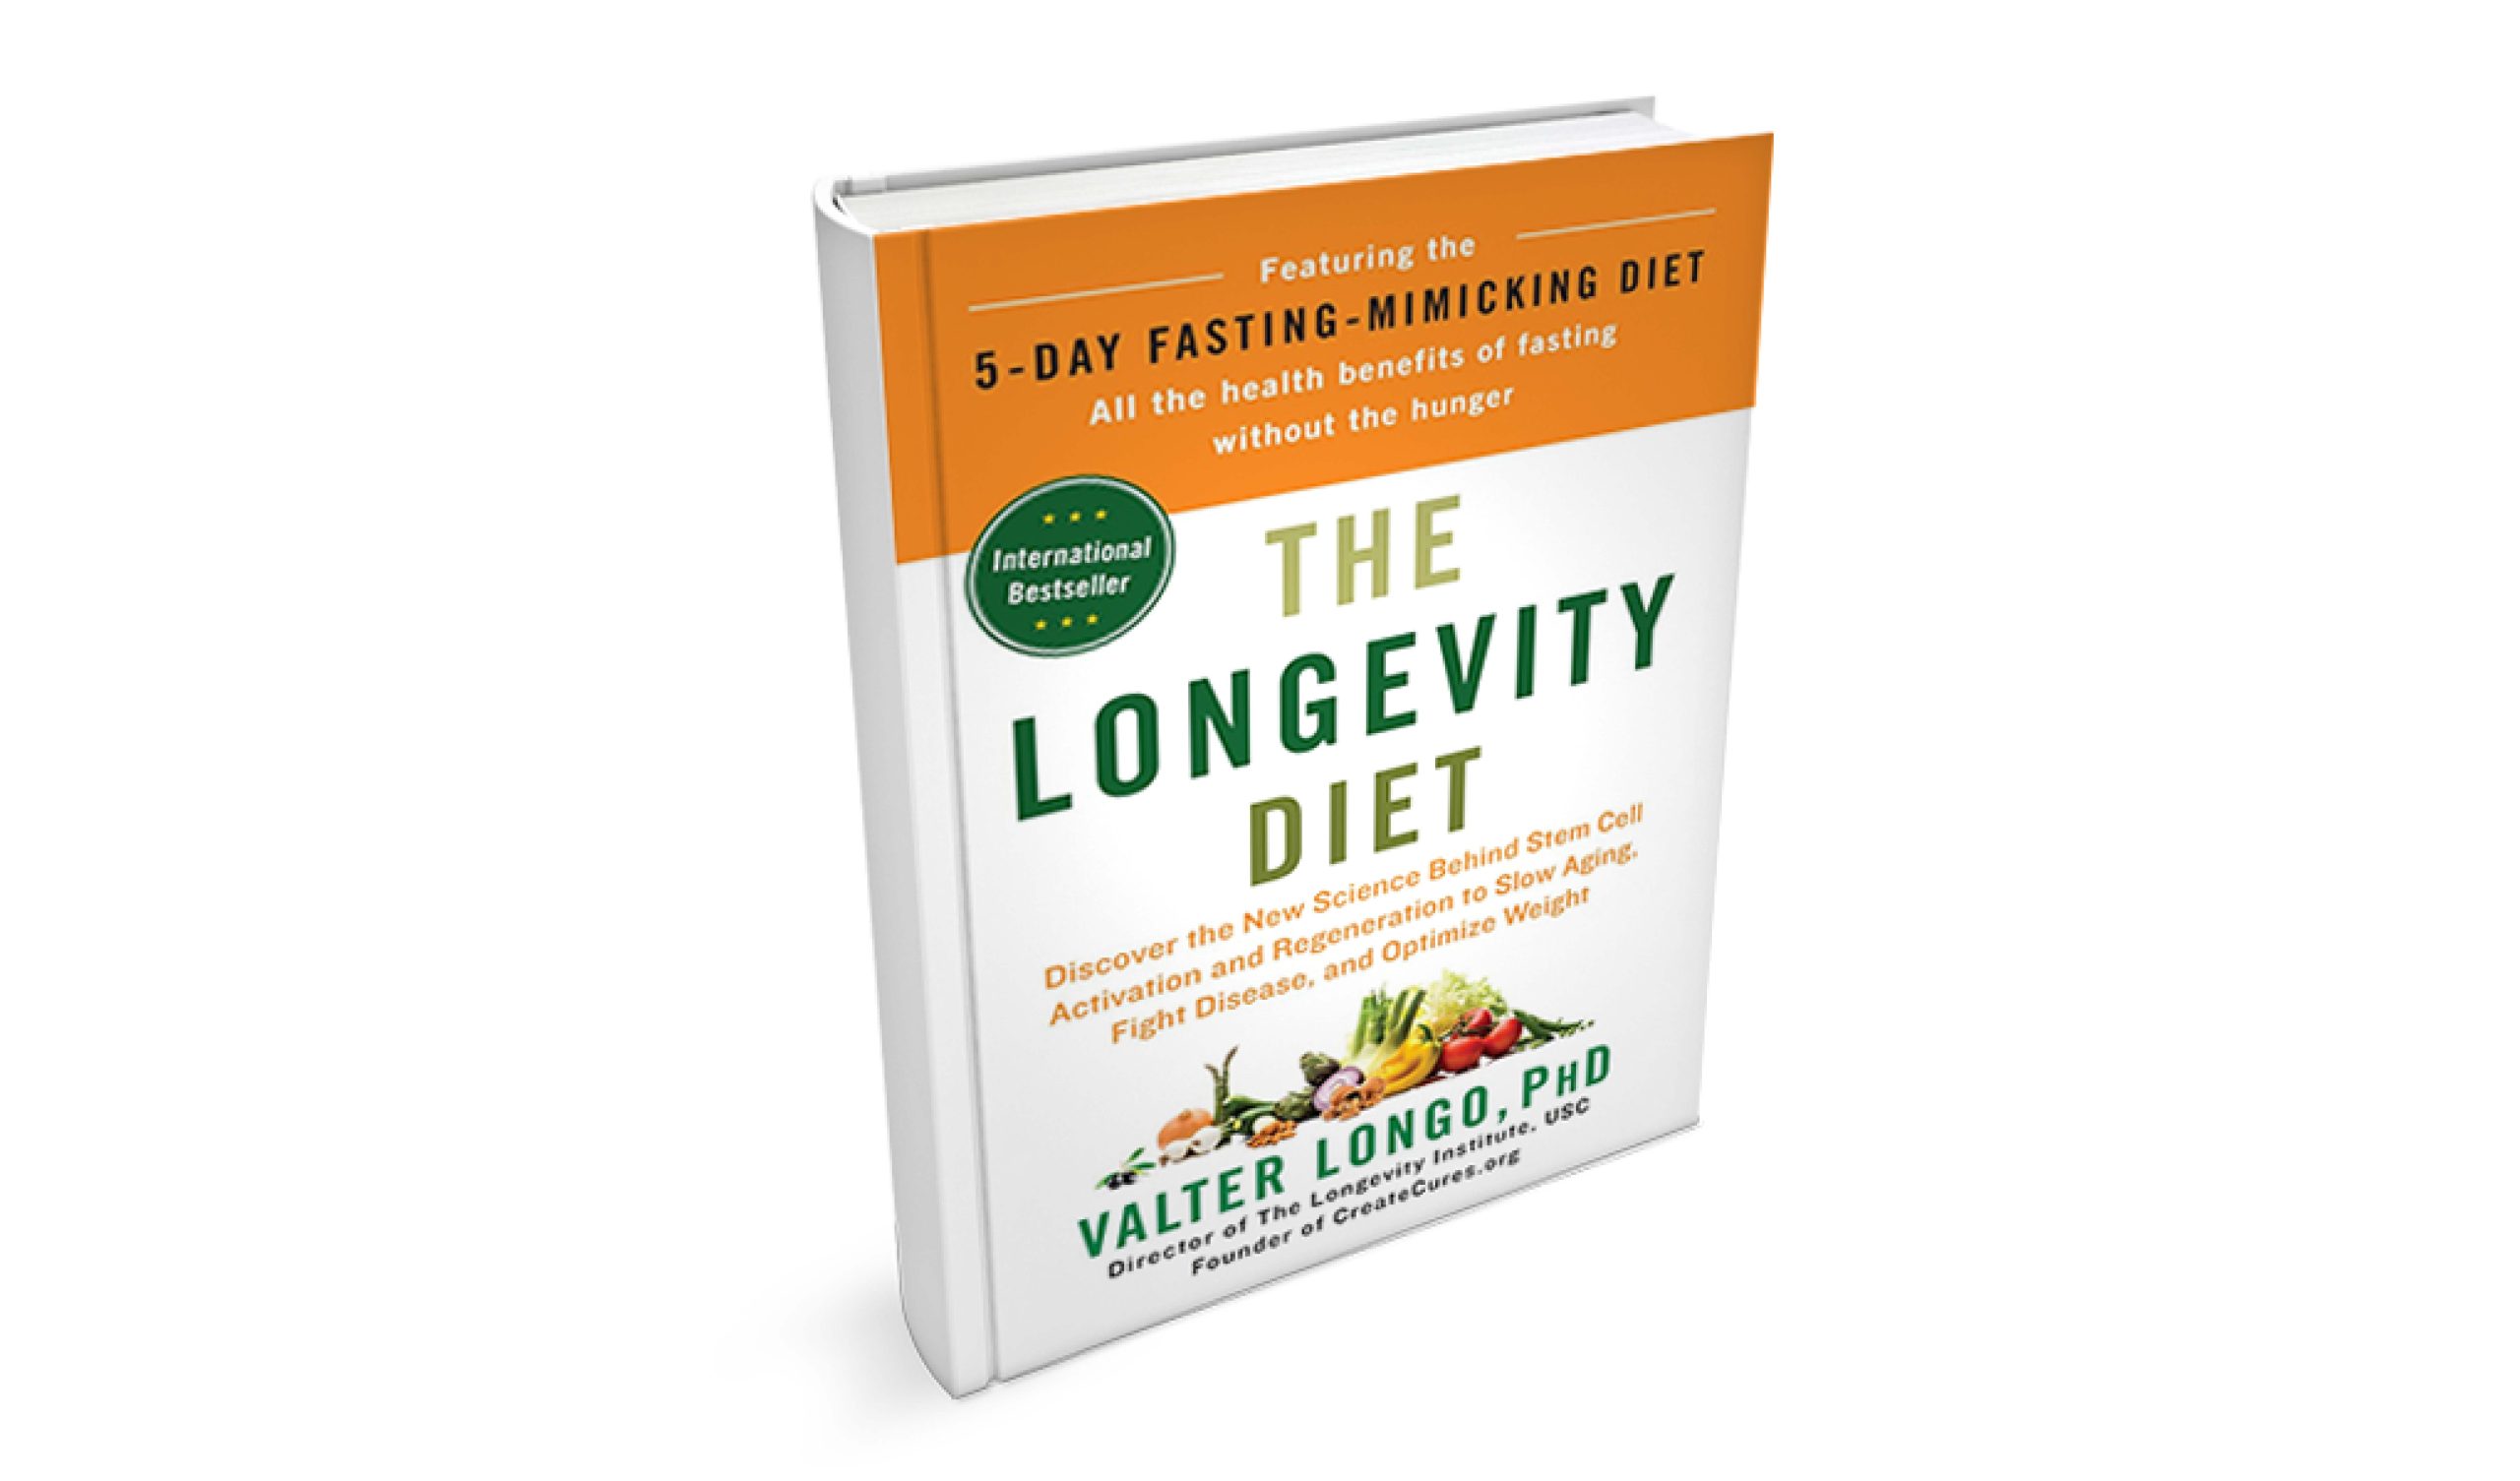 The Longevity Diet by Valter Longo